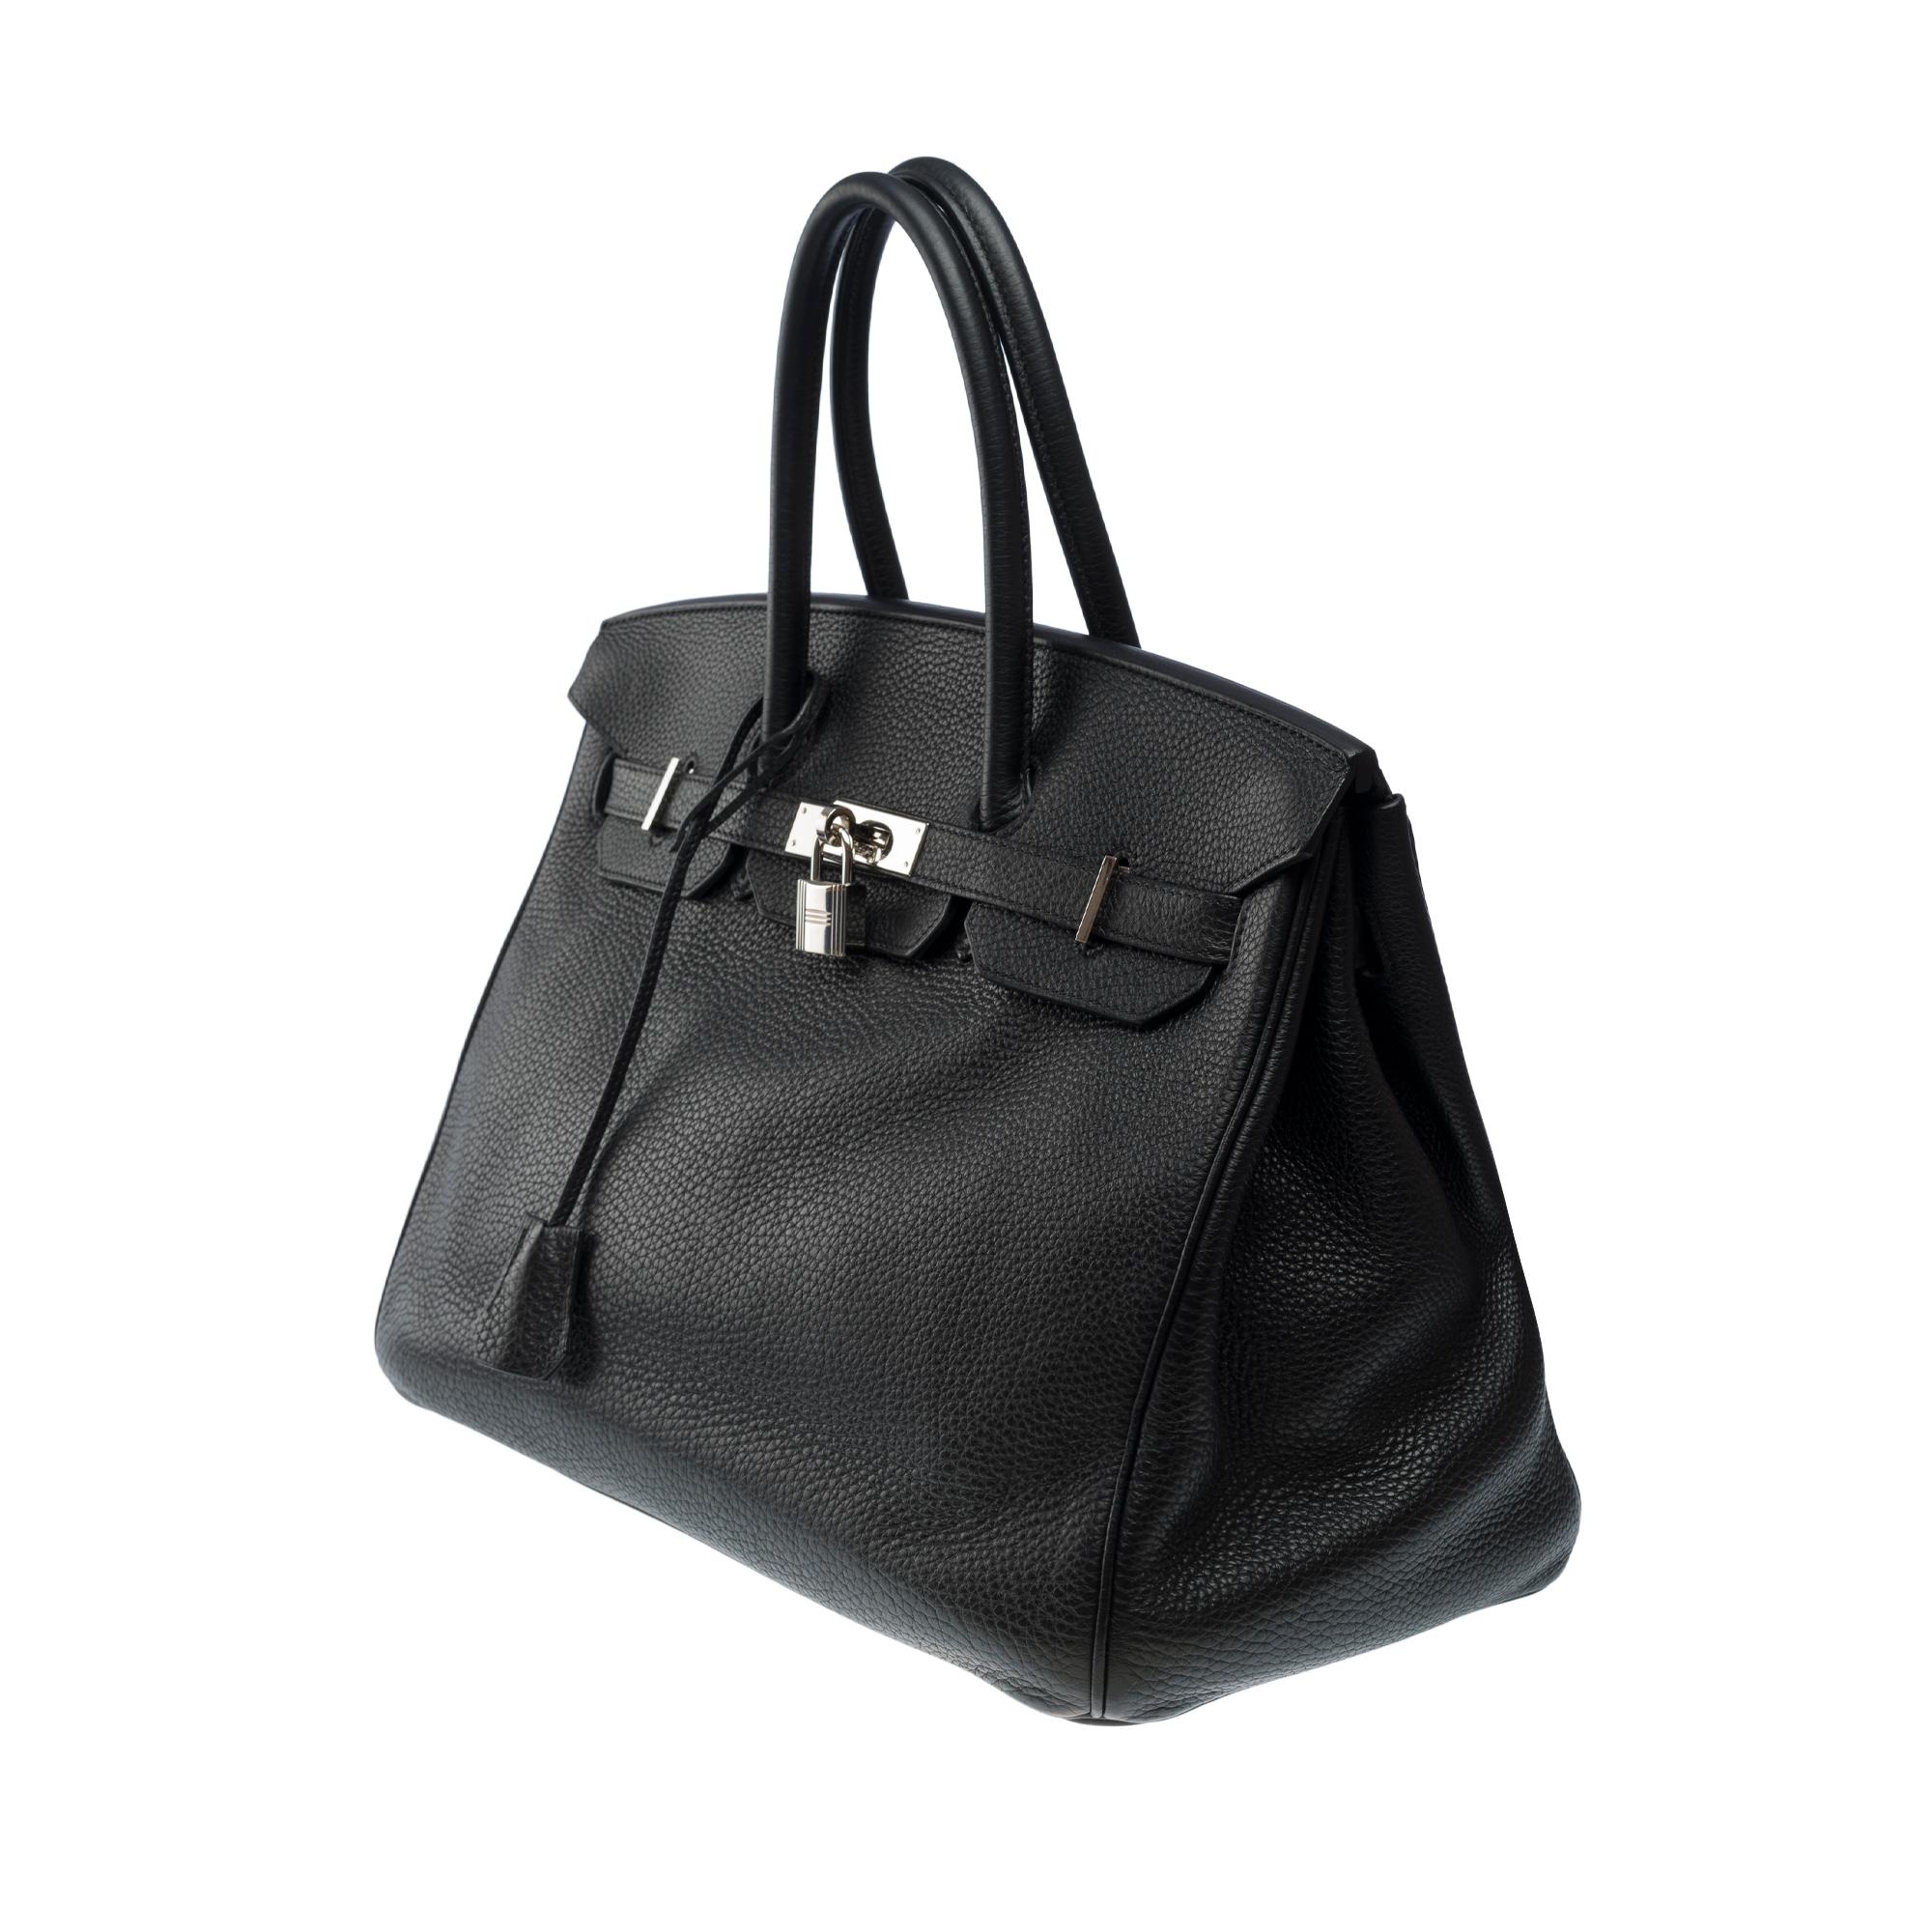 Stunning Hermes Birkin 30 handbag in Black Togo leather, SHW For Sale 1